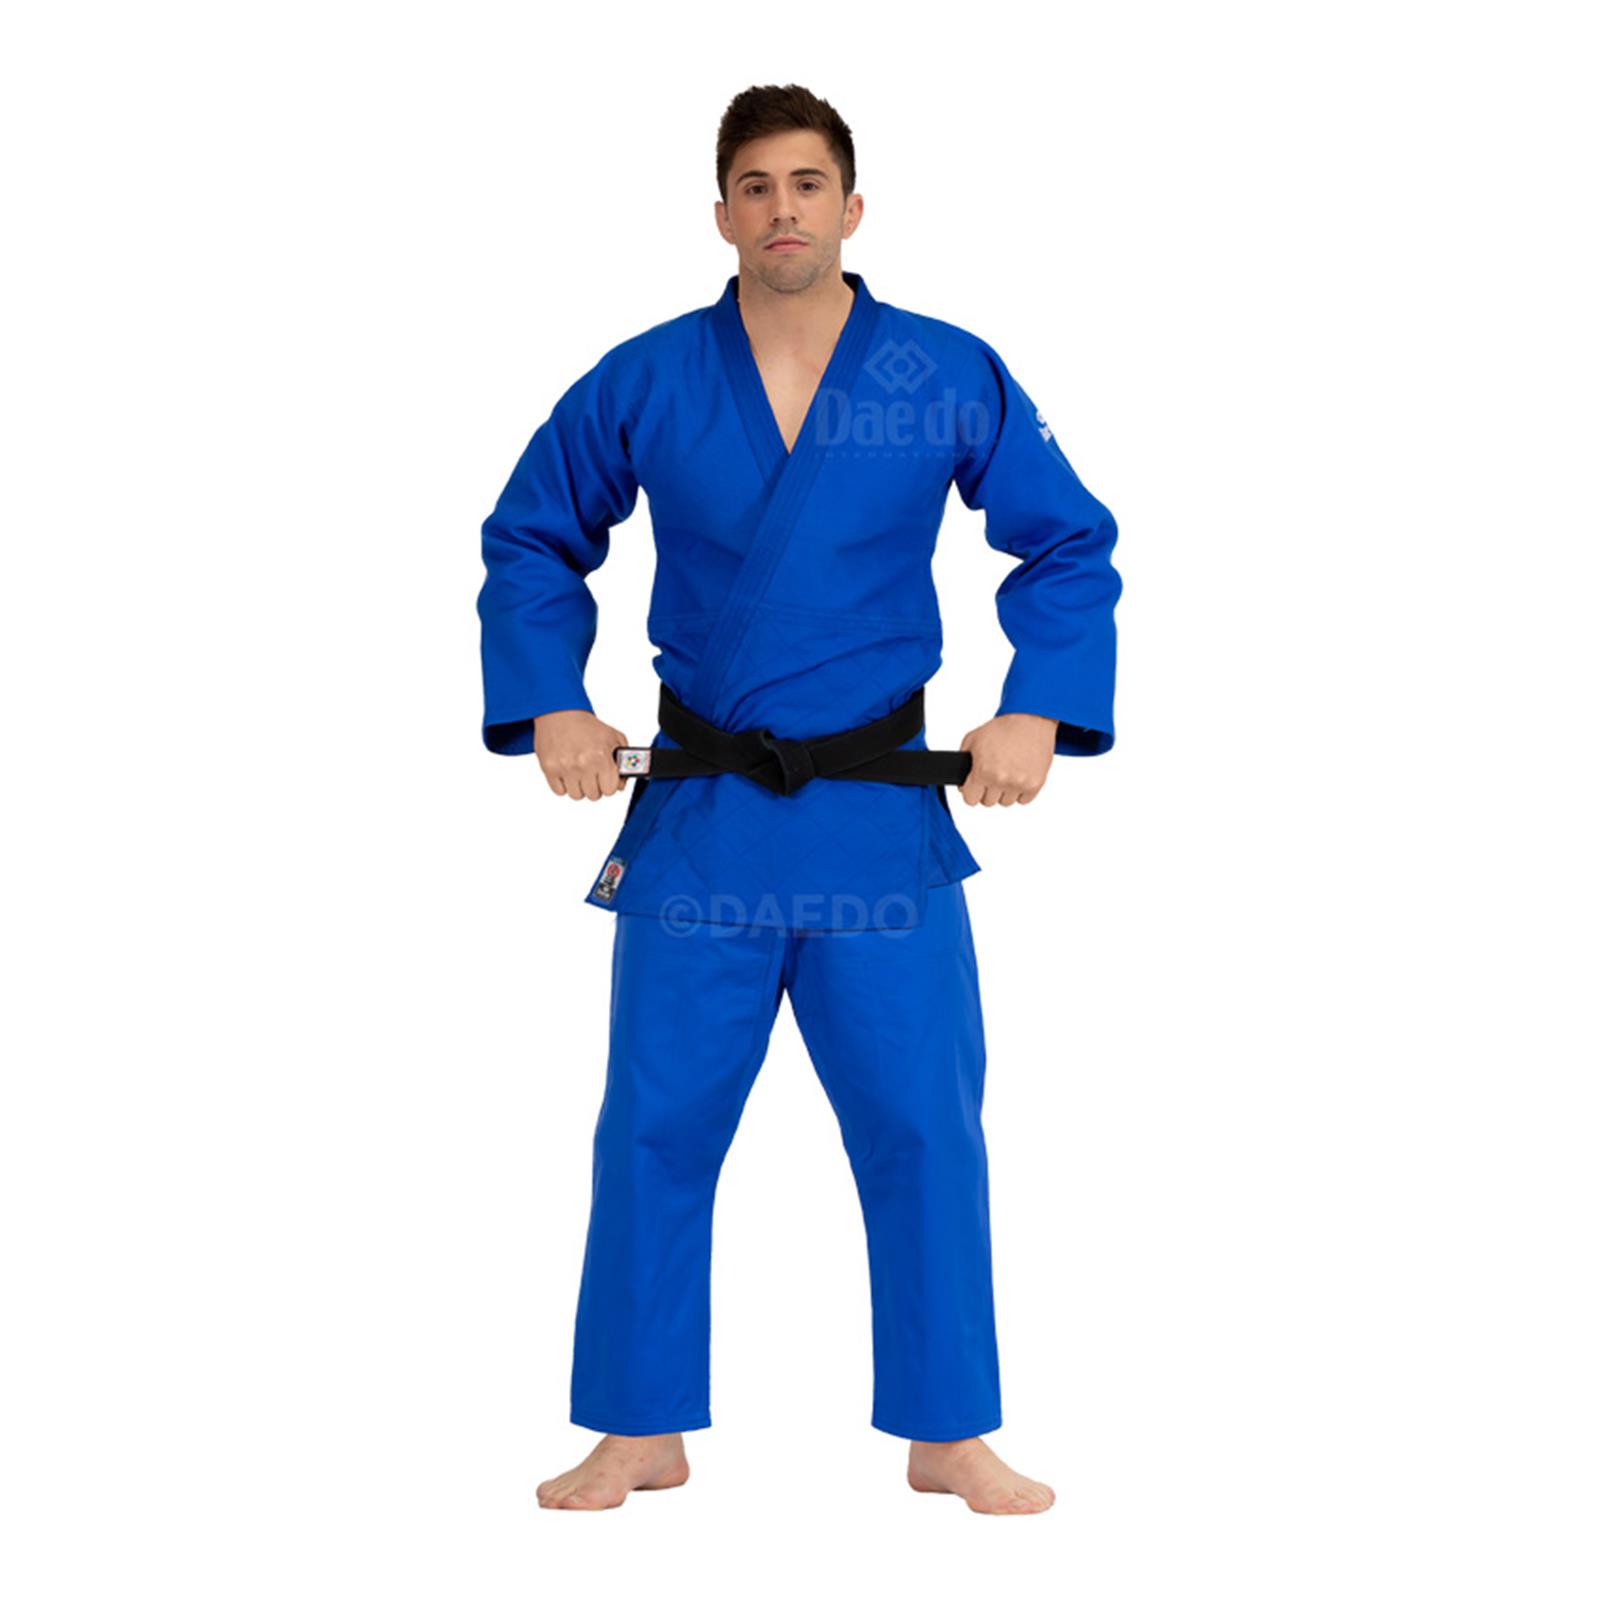 Dae Do Judogi da Competizione Elite az (2.5° - 155cm - BLU)